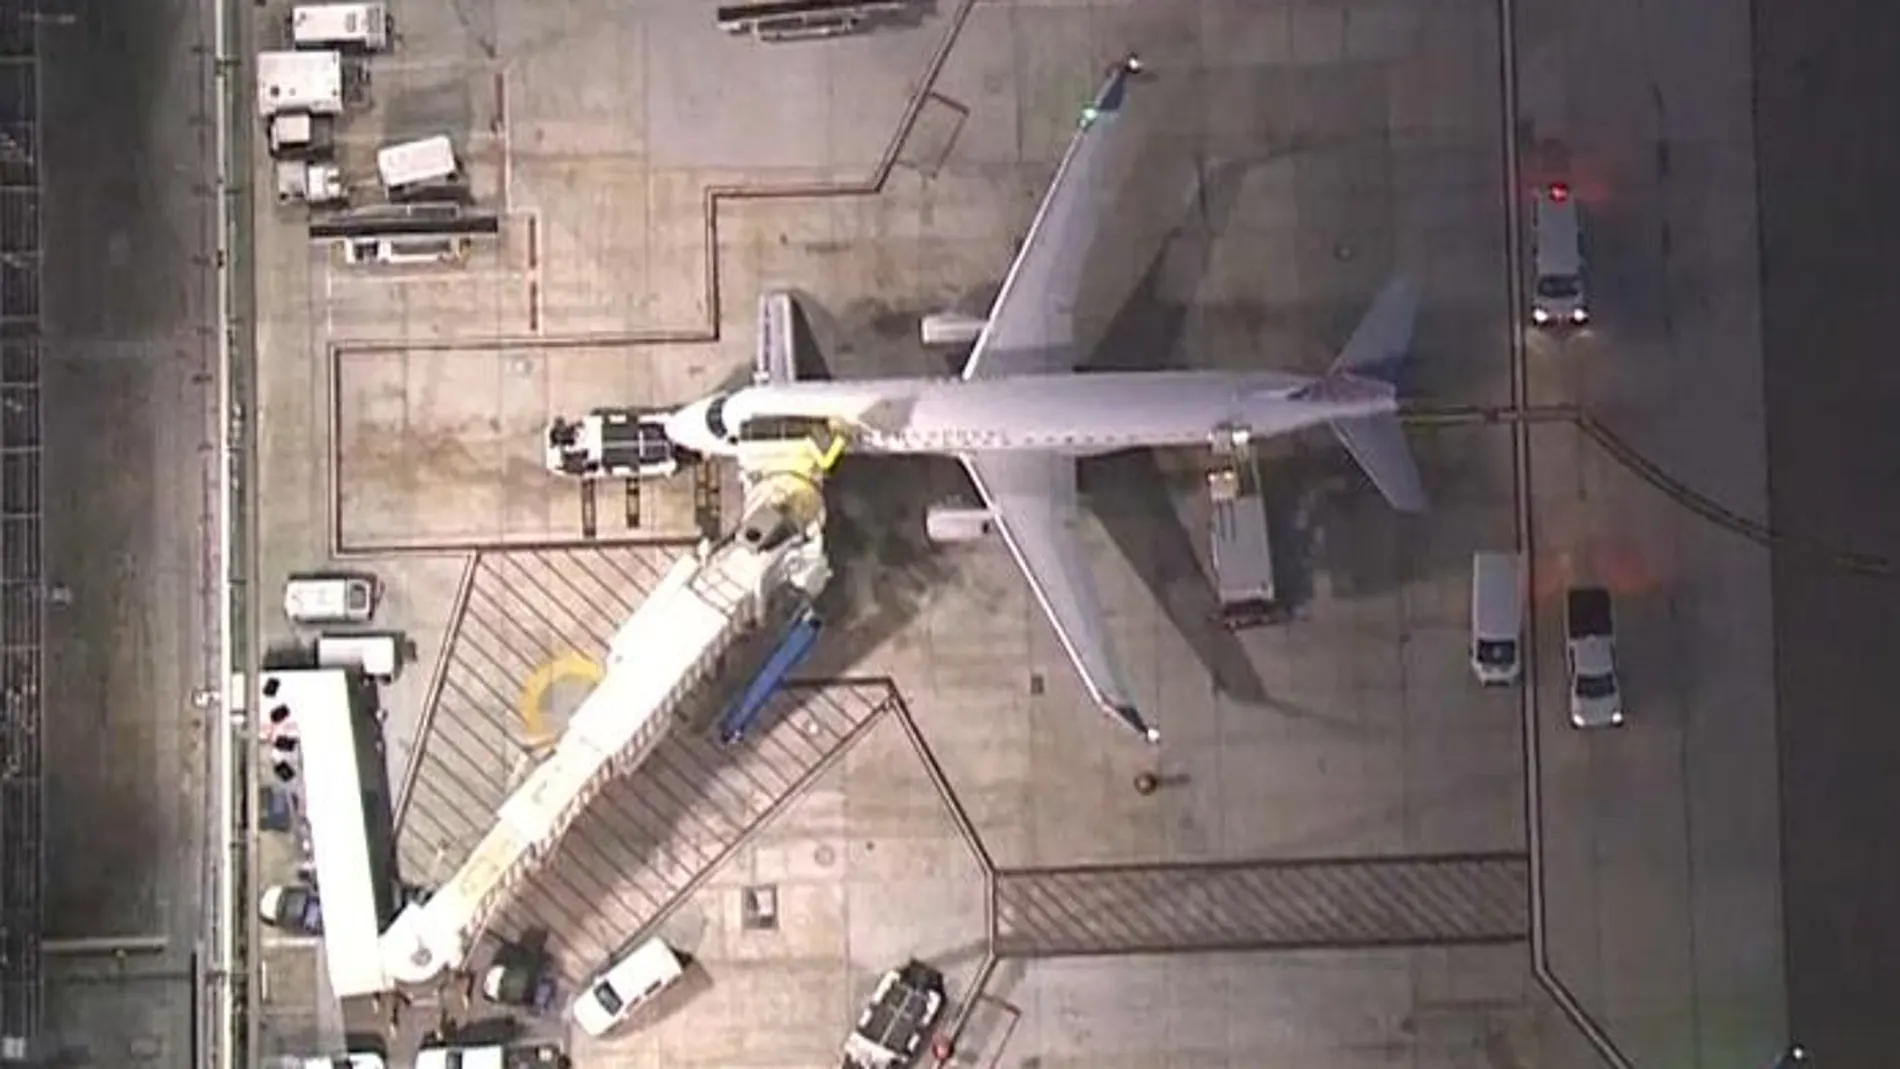 El avión volvió a la puerta de embarque tras el incidente en Los Angeles